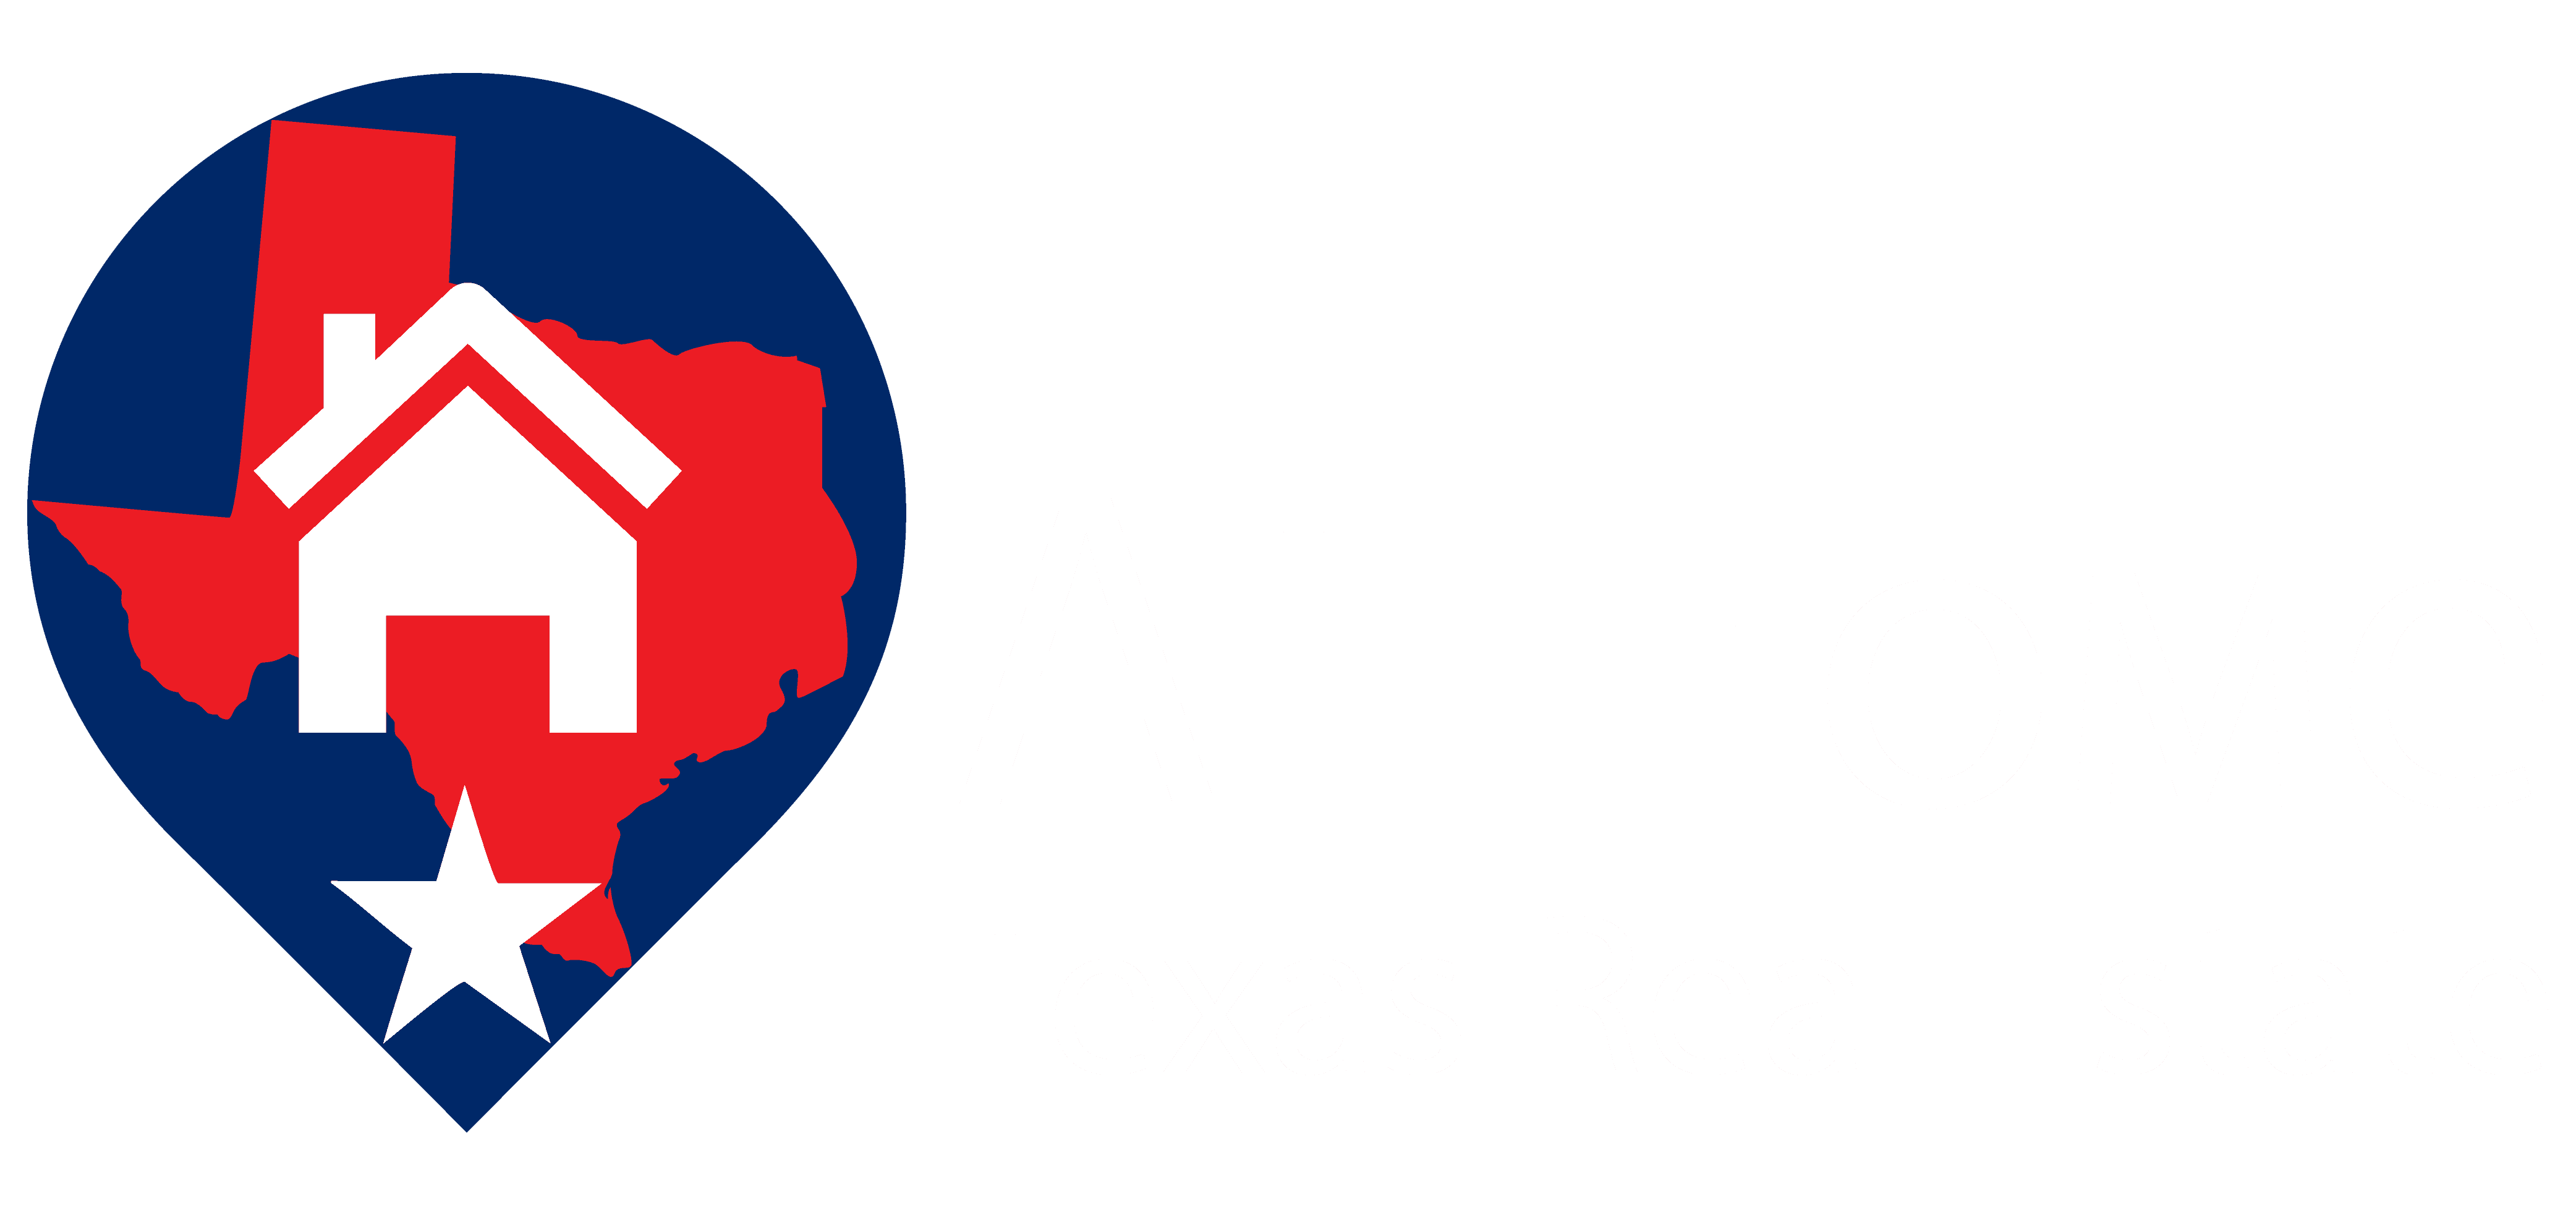 ATHomeTX-Real-Estate-Logo-white-text